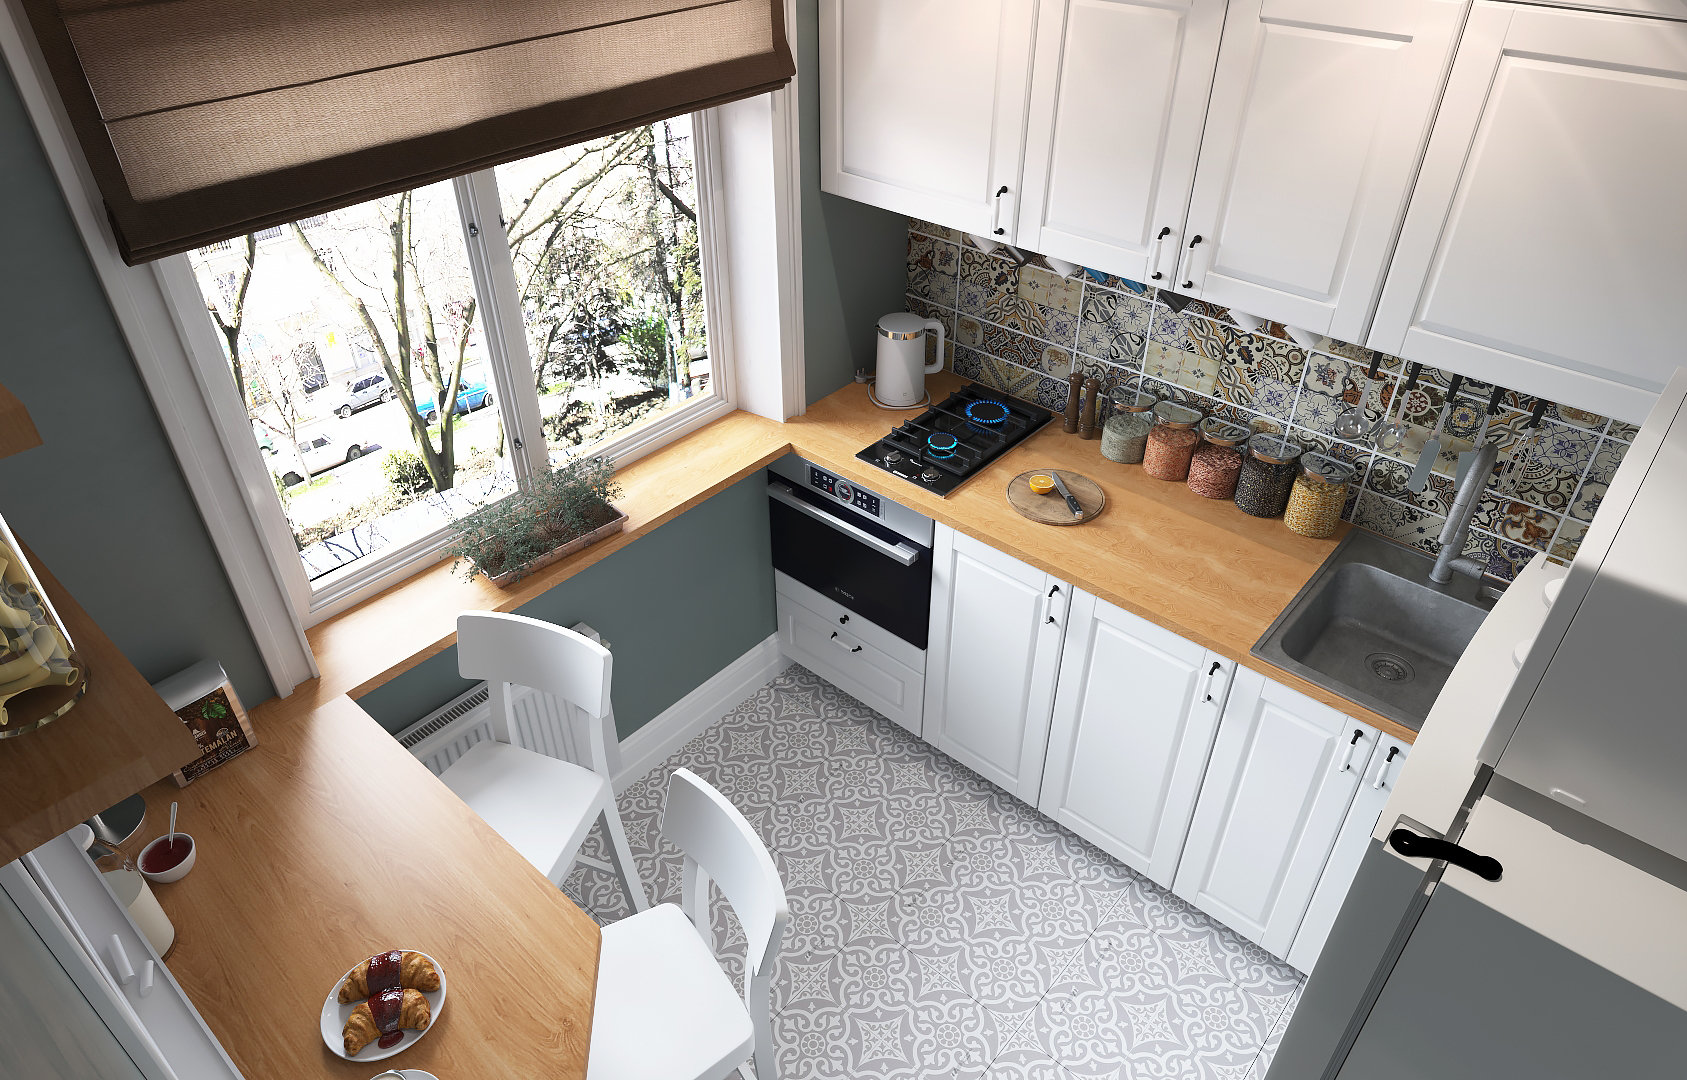 Интерьер кухни в доме: этаж и тип помещения